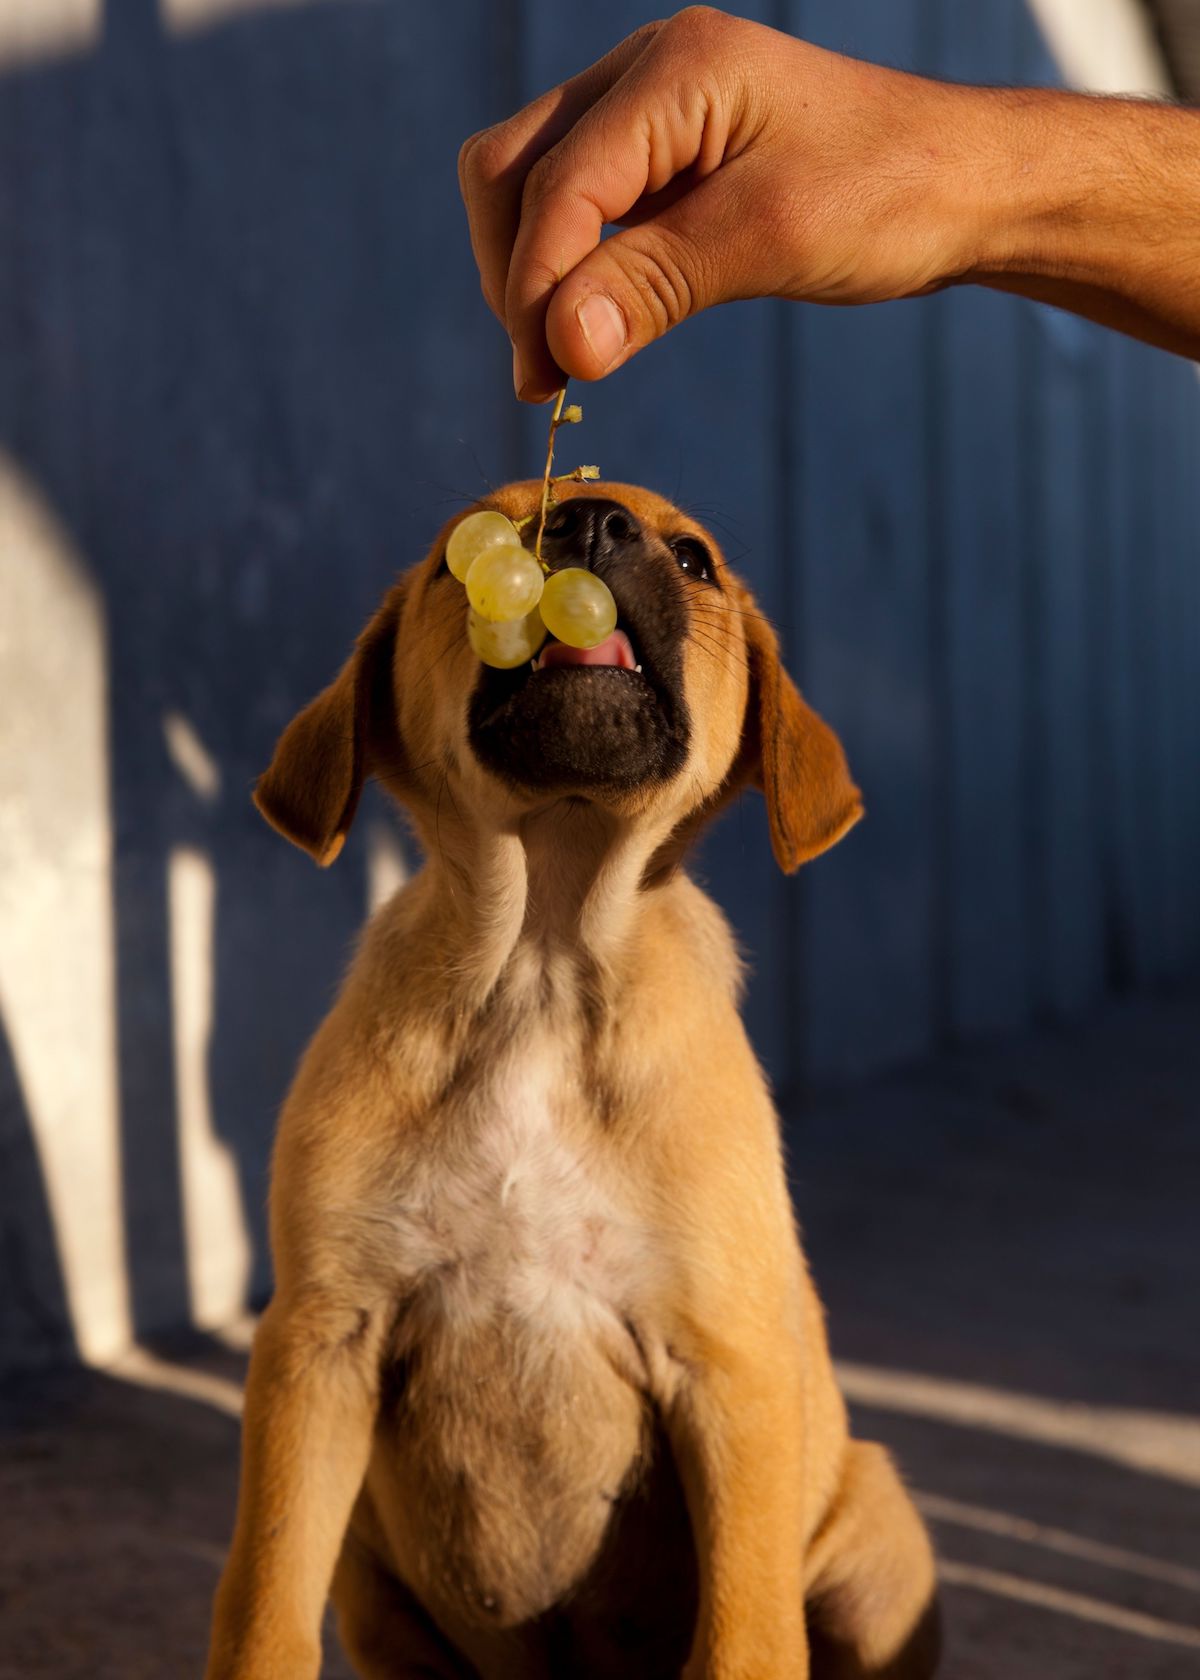 Dog Eating Grapes